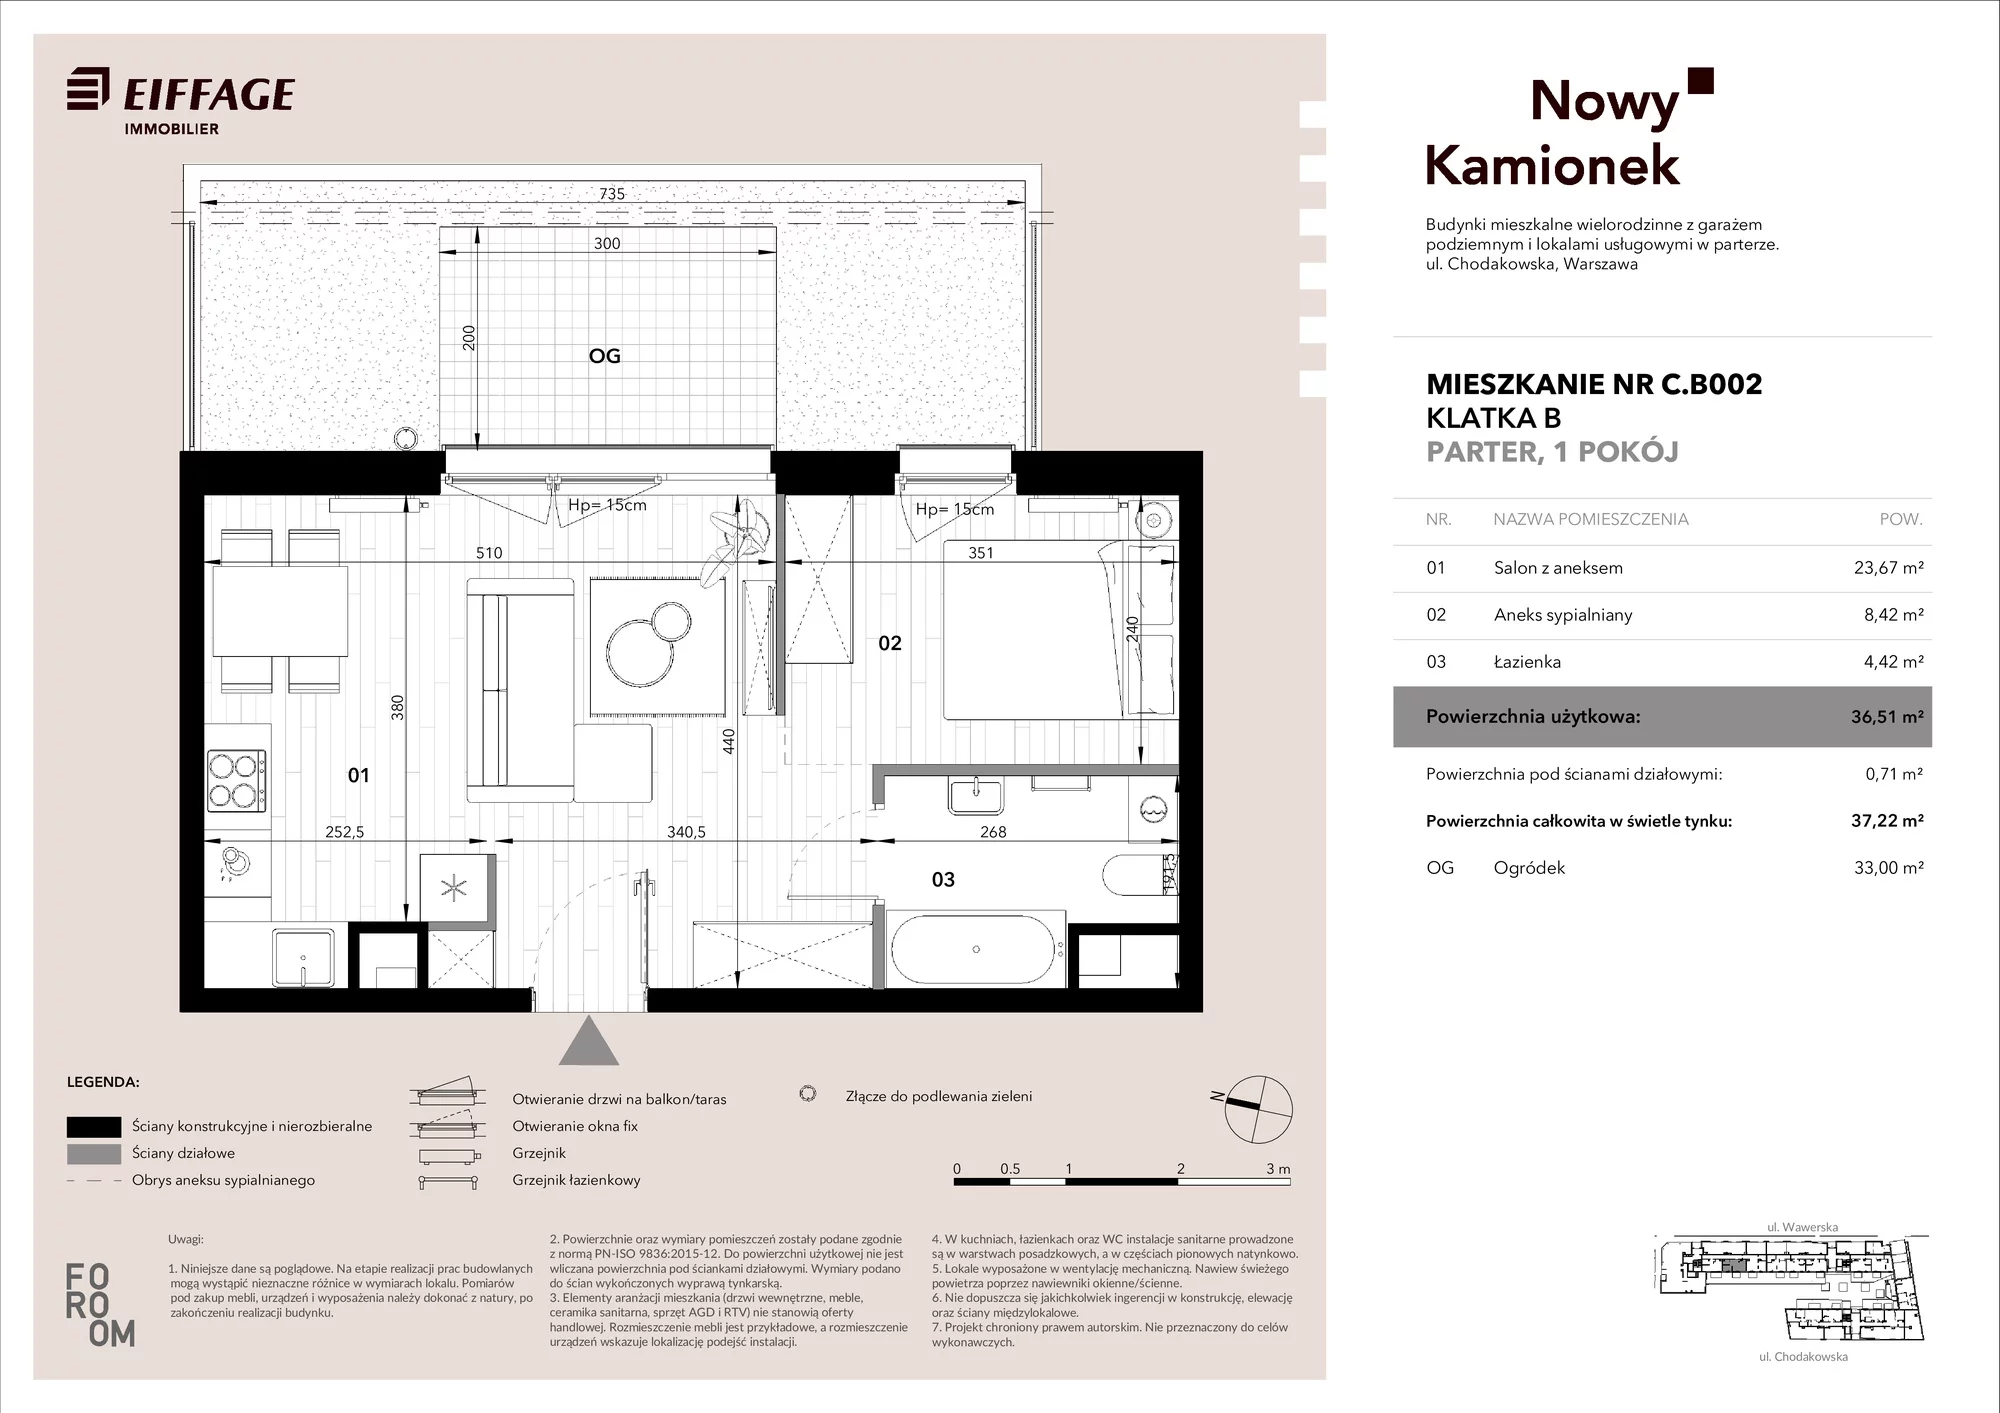 Mieszkanie 36,51 m², parter, oferta nr C.B002, Nowy Kamionek, Warszawa, Praga Południe, Kamionek, ul. Chodakowska